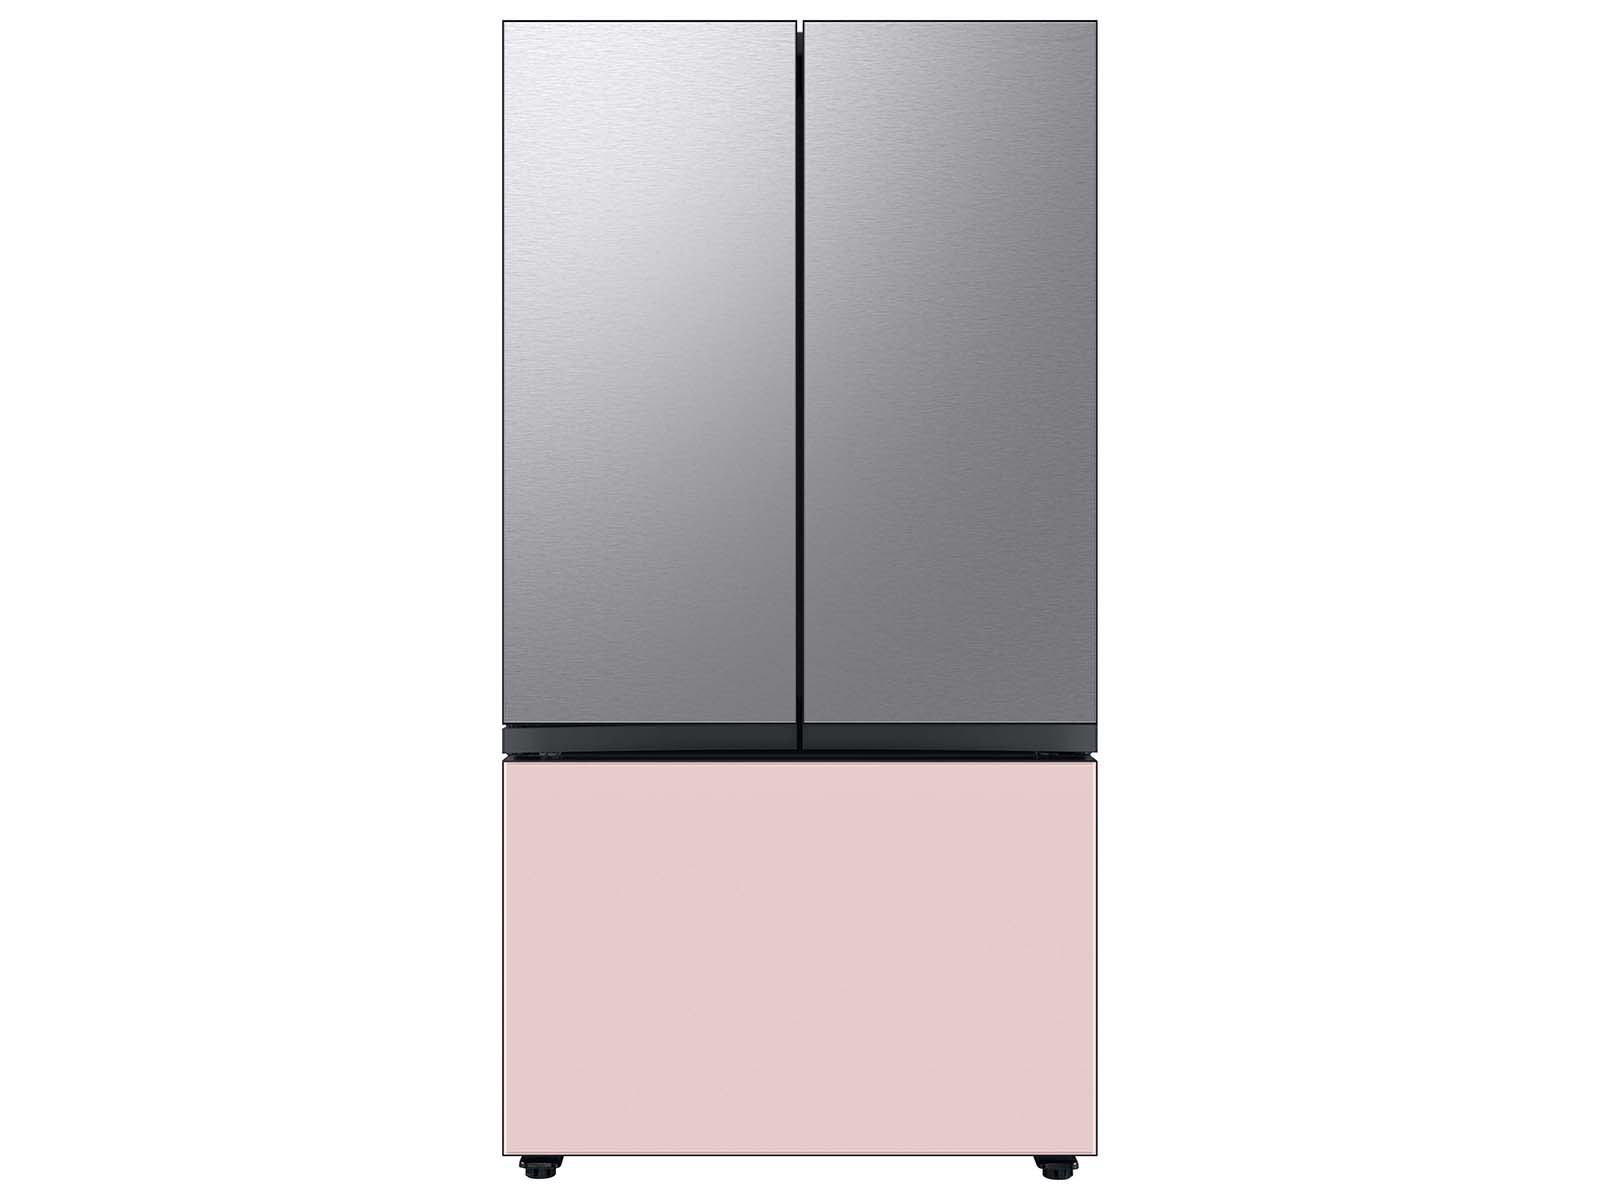 Thumbnail image of Bespoke 3-Door French Door Refrigerator Panel in Pink Glass - Bottom Panel